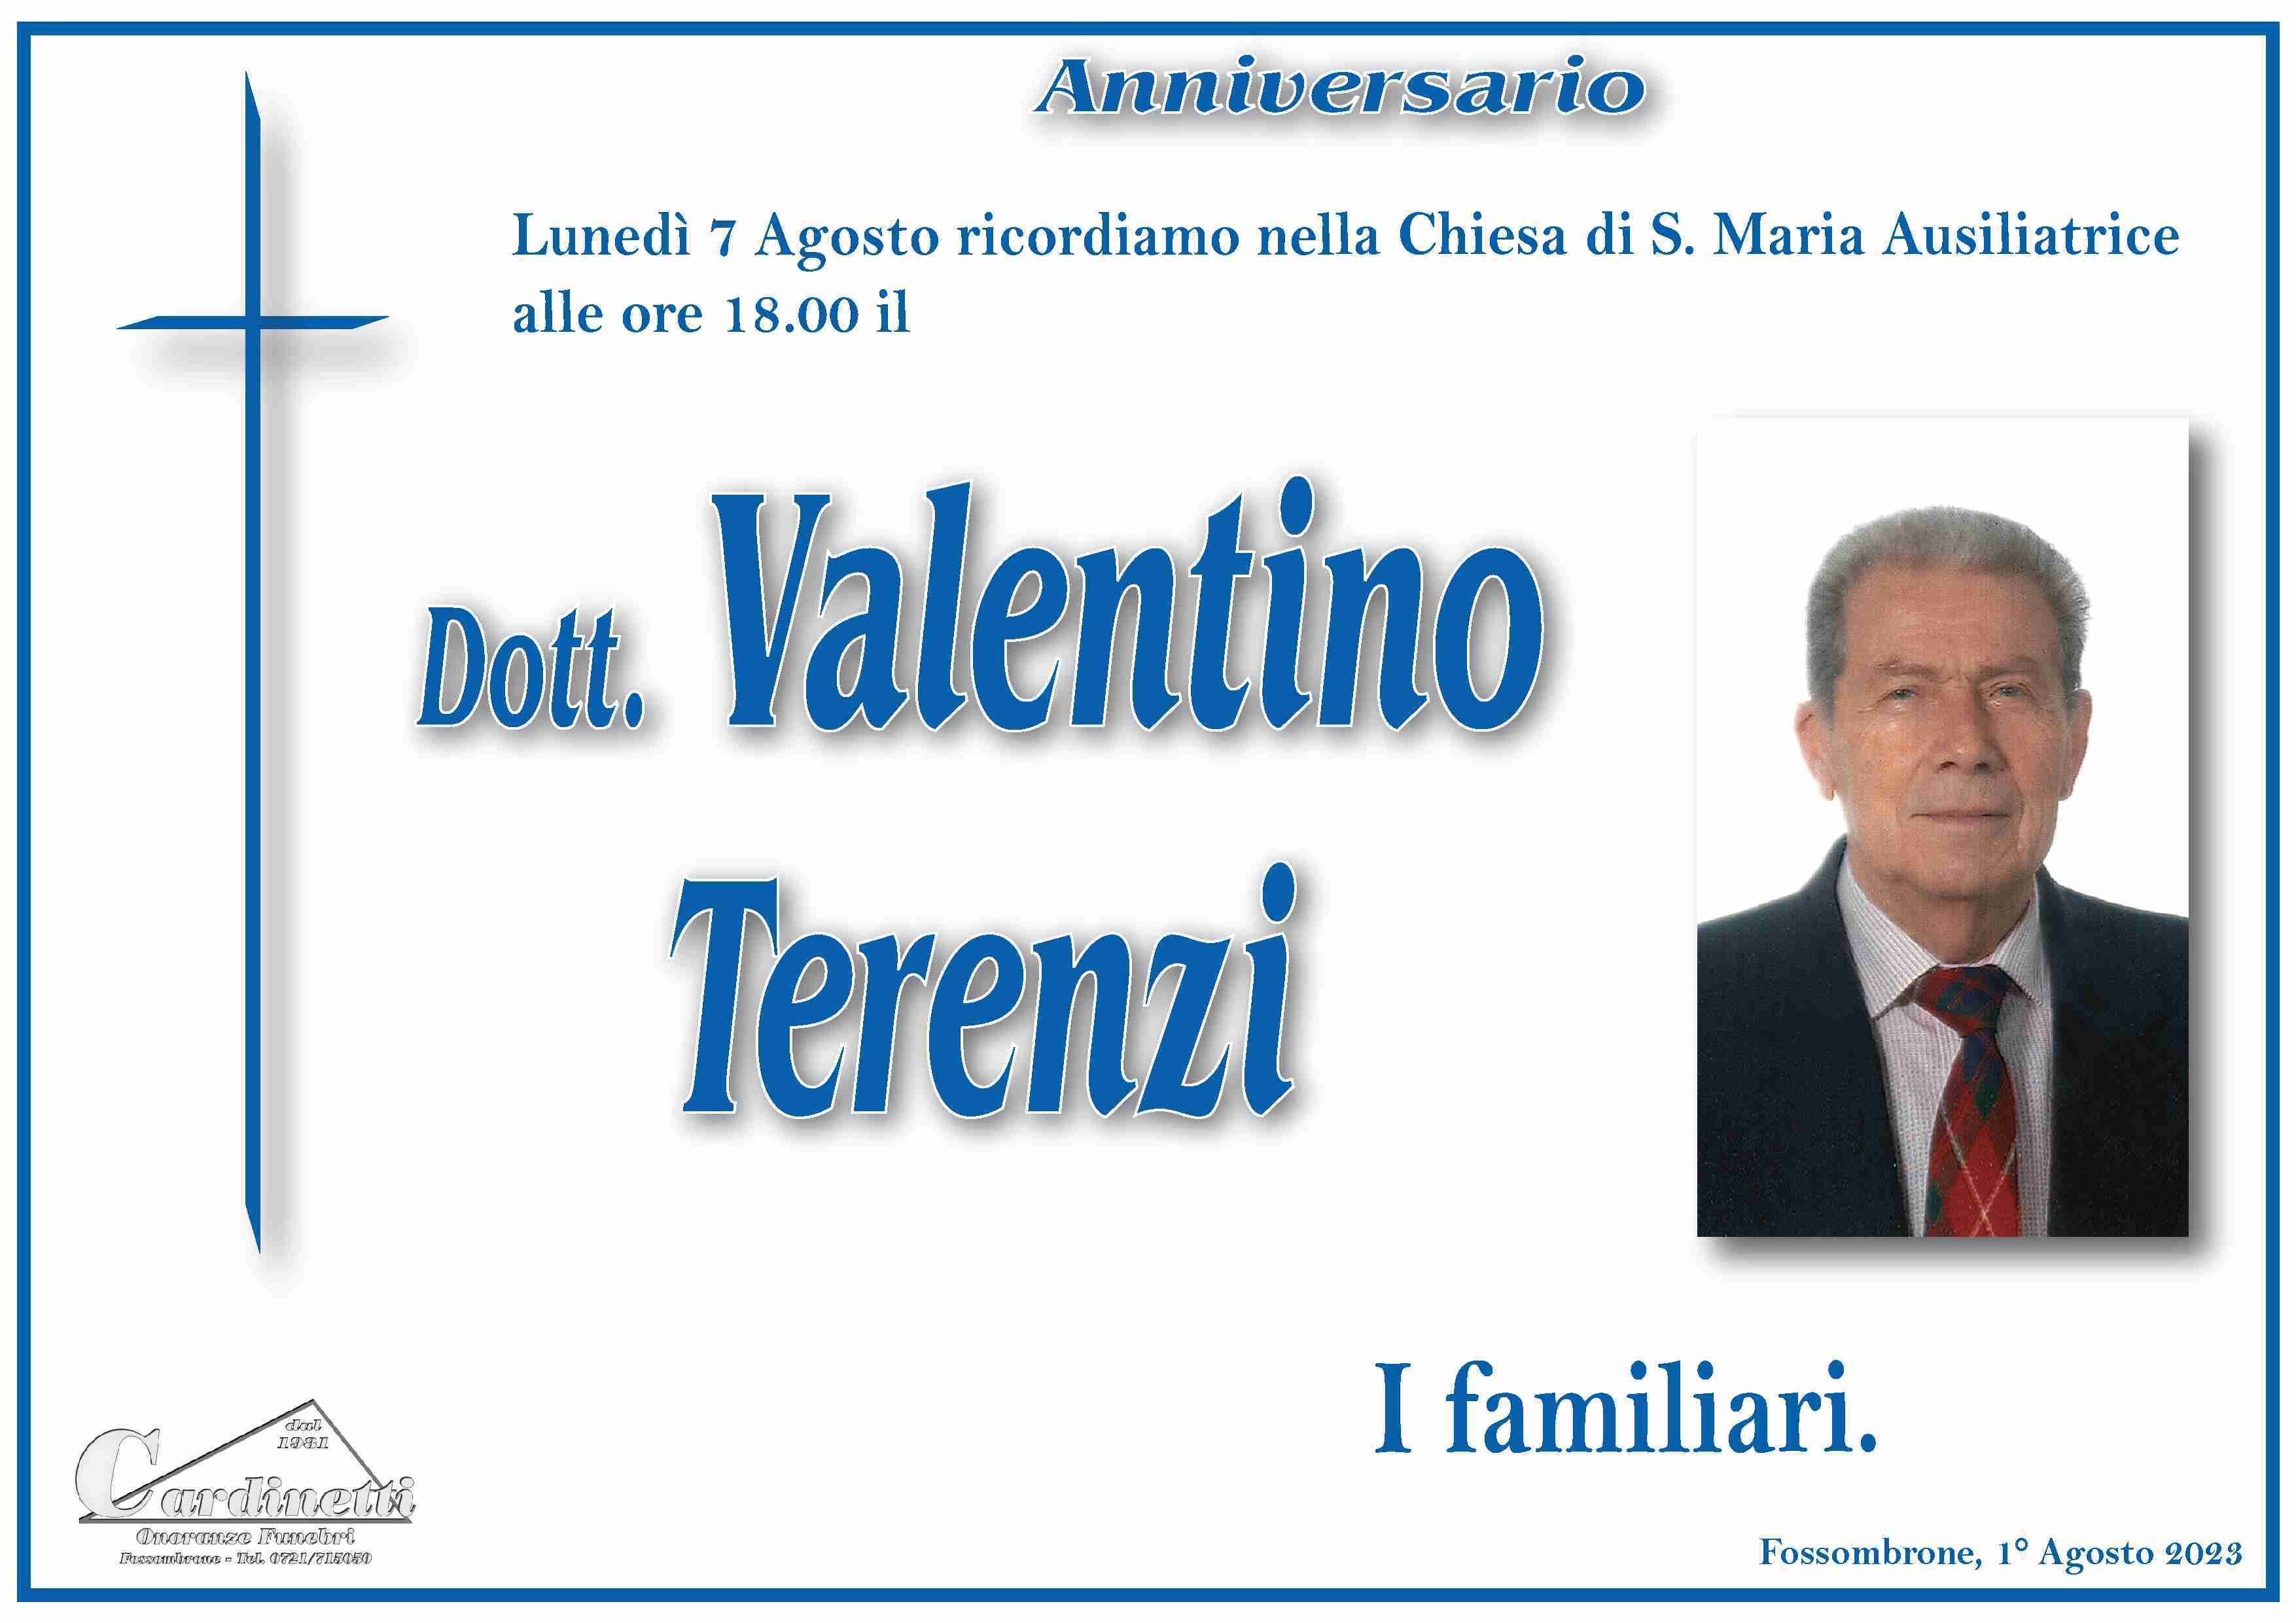 Dott. Valentino Terenzi